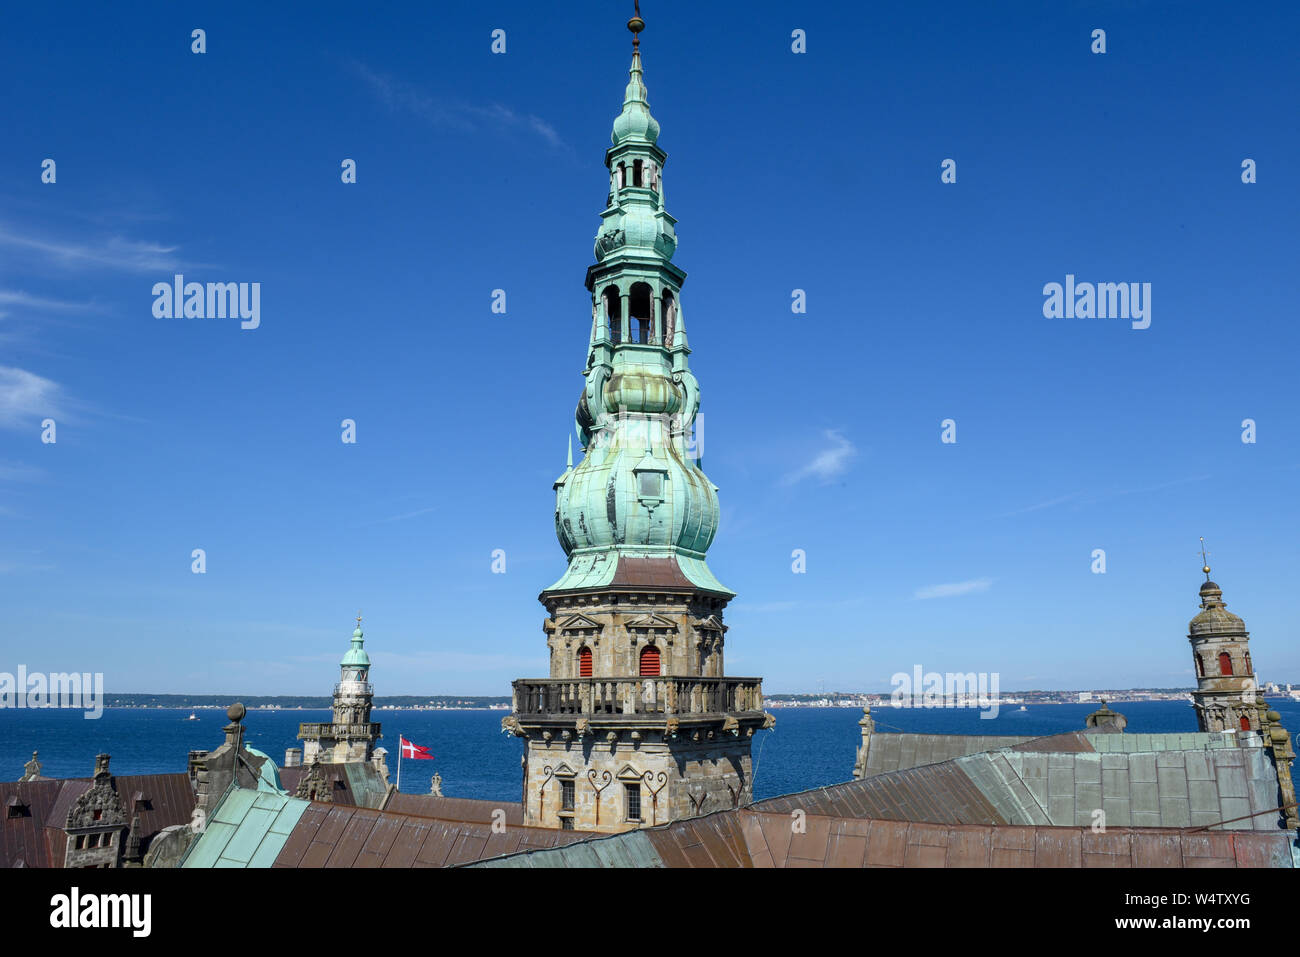 Helsingor, Denmark - 28 June 2019: tower of Kronborg castle at Helsingor on Denmark Stock Photo